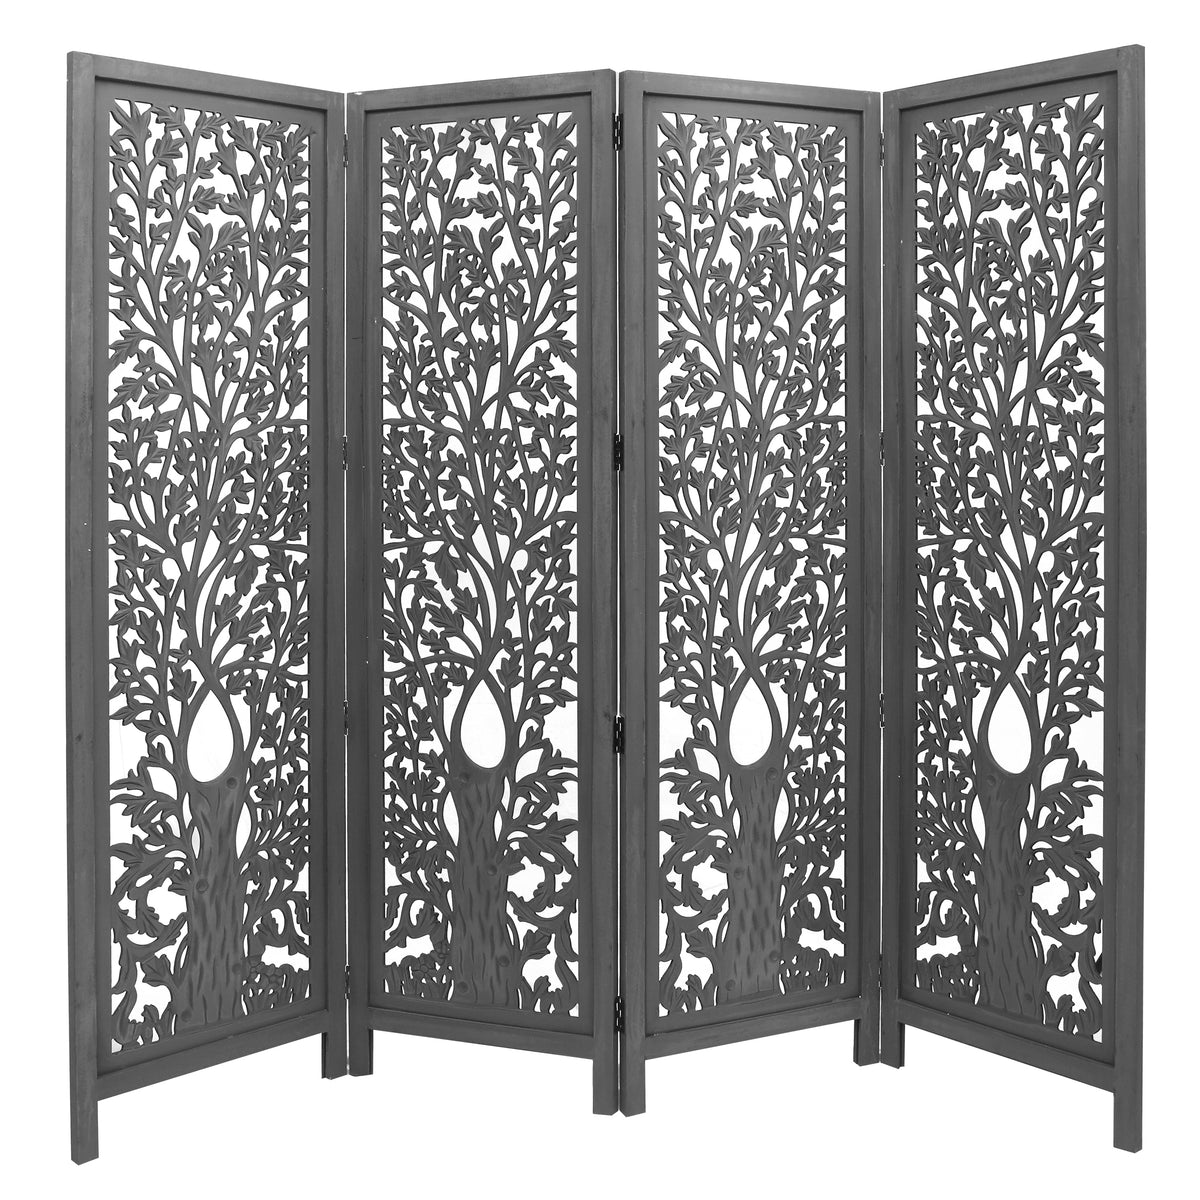 Iris 4 Panel Room Divider in Timber Wood - Dark Grey - Notbrand